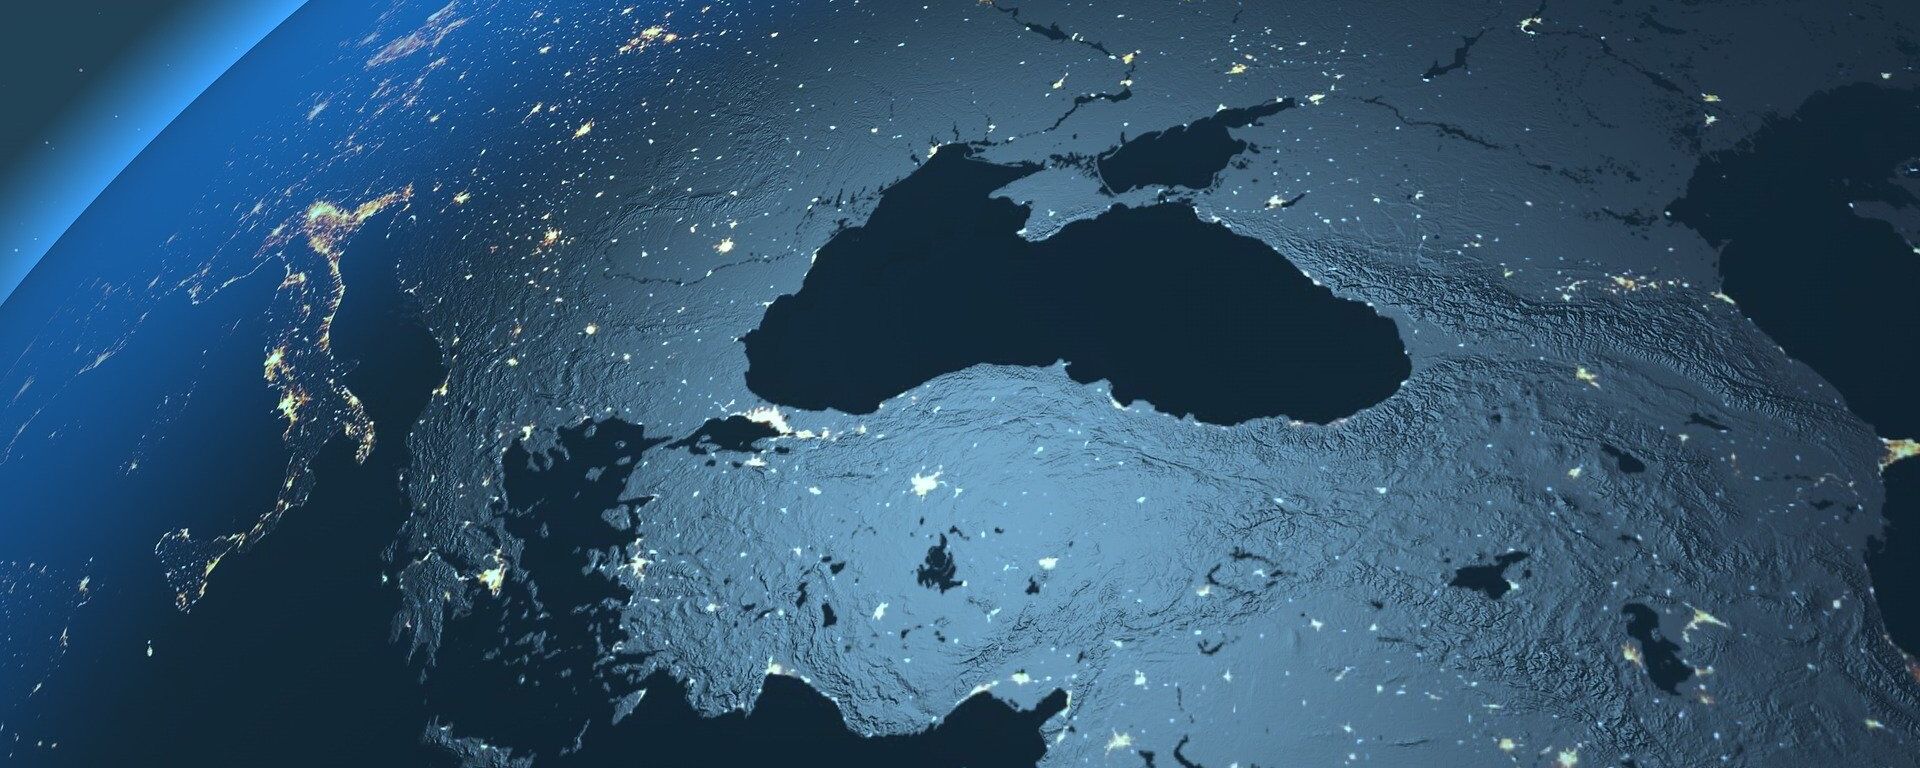 El mar Negro visto desde el espacio (imagen referencial) - Sputnik Mundo, 1920, 04.06.2021